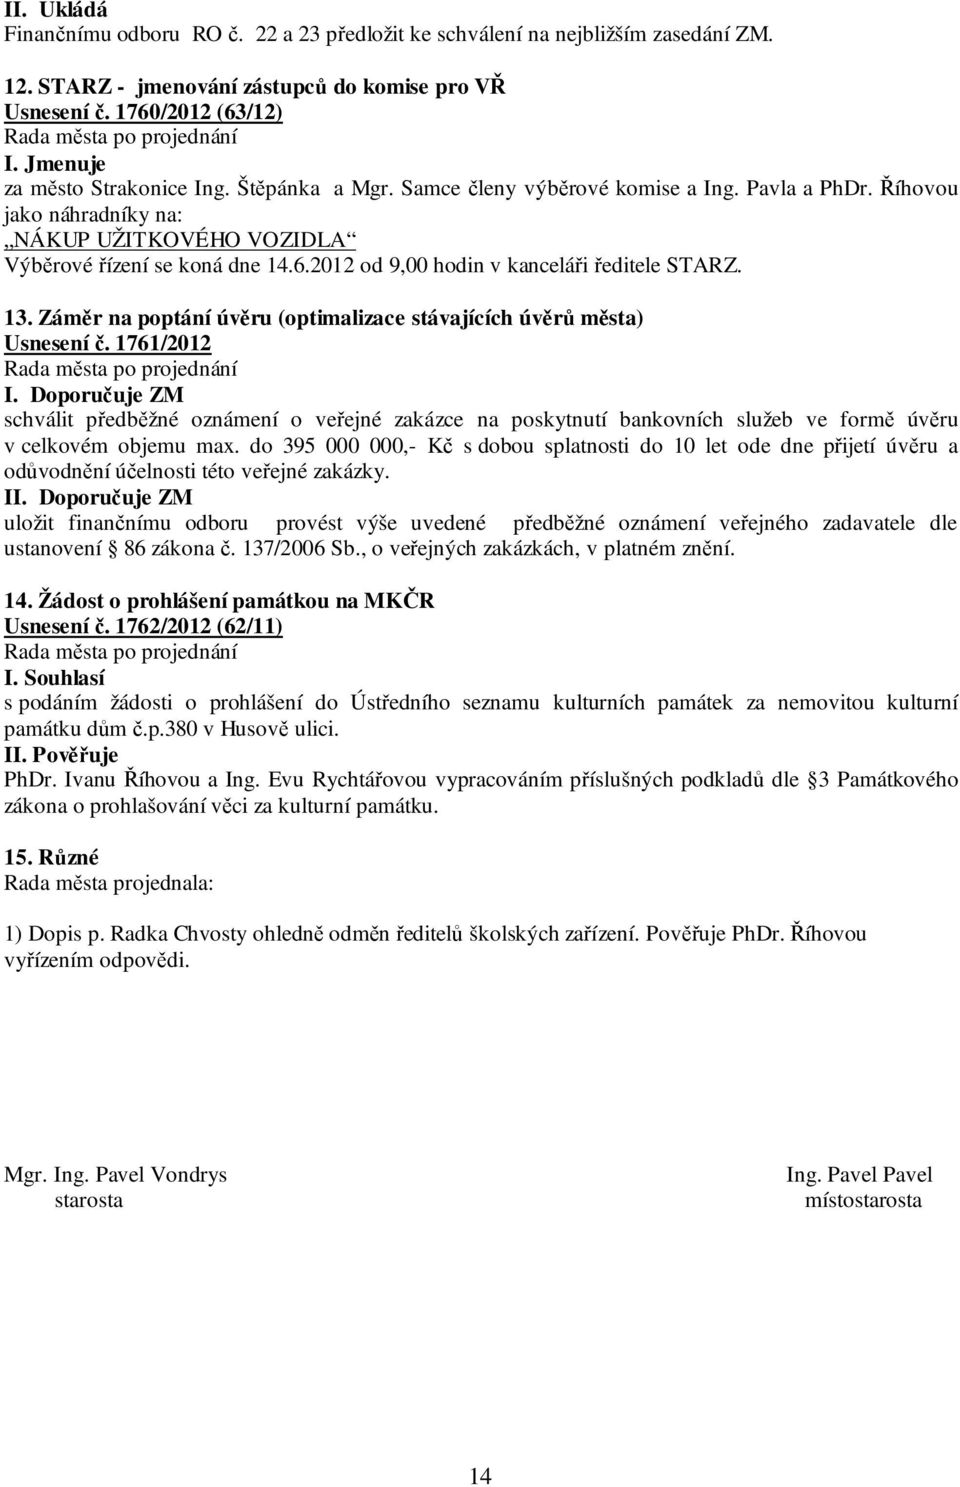 2012 od 9,00 hodin v kanceláři ředitele STARZ. 13. Záměr na poptání úvěru (optimalizace stávajících úvěrů města) Usnesení č.